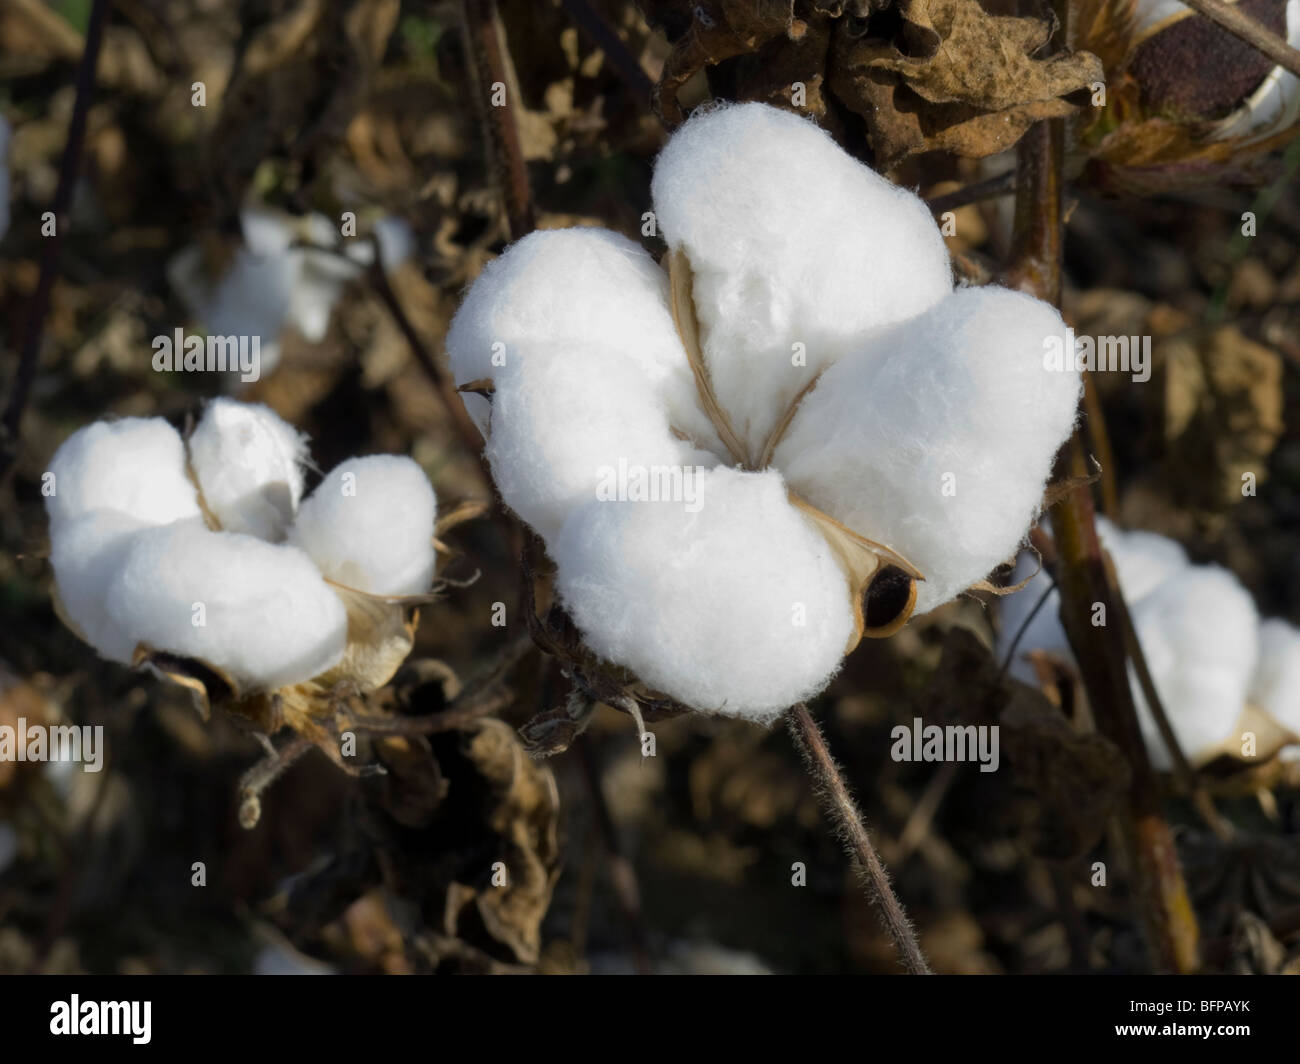 Cotton fields in Arkansas Stock Photo